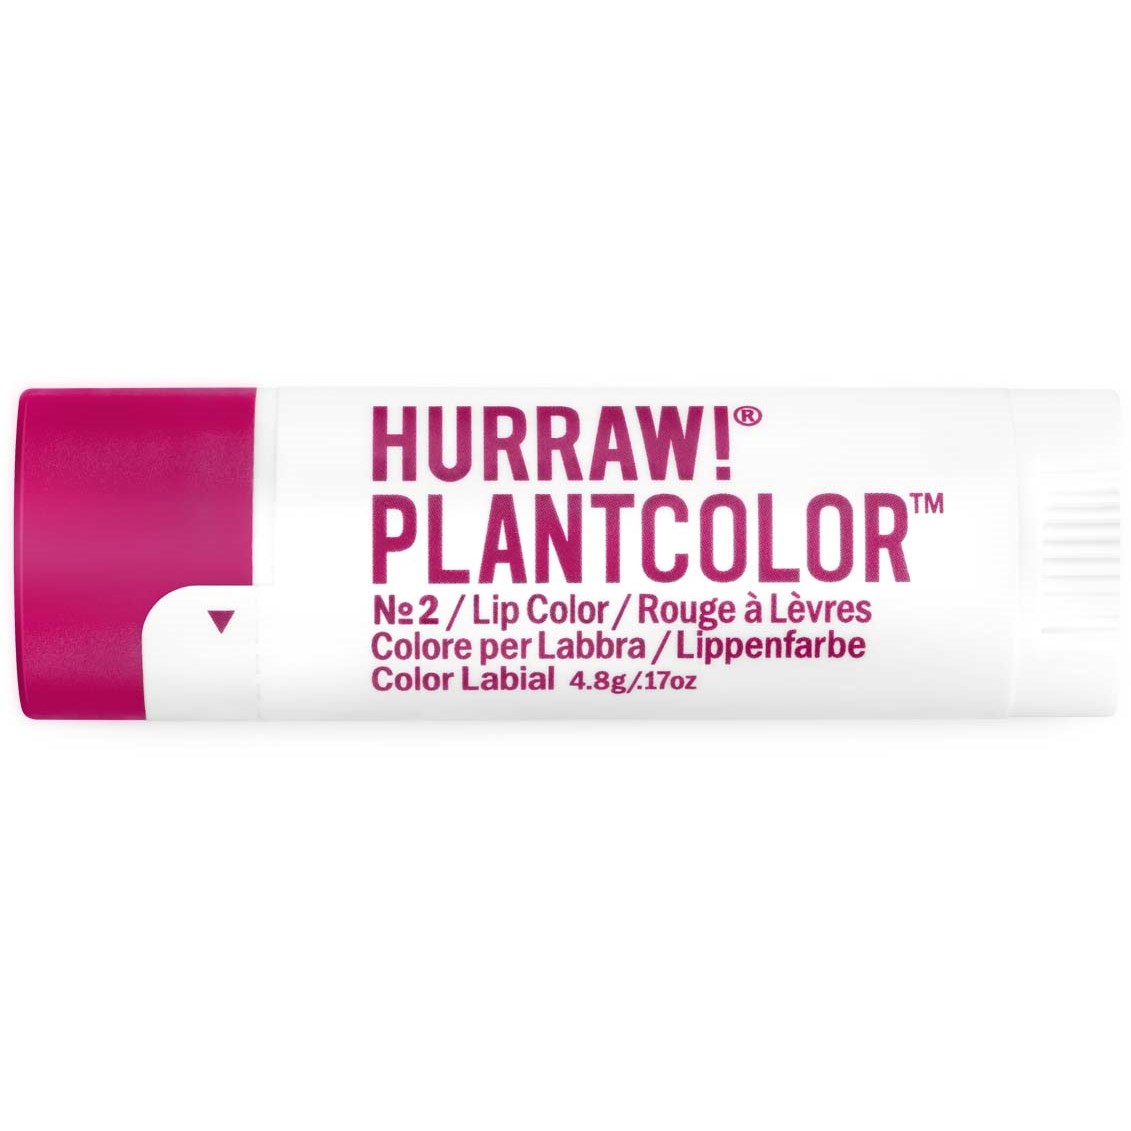 Hurraw! Plantcolor Lip Color No 2